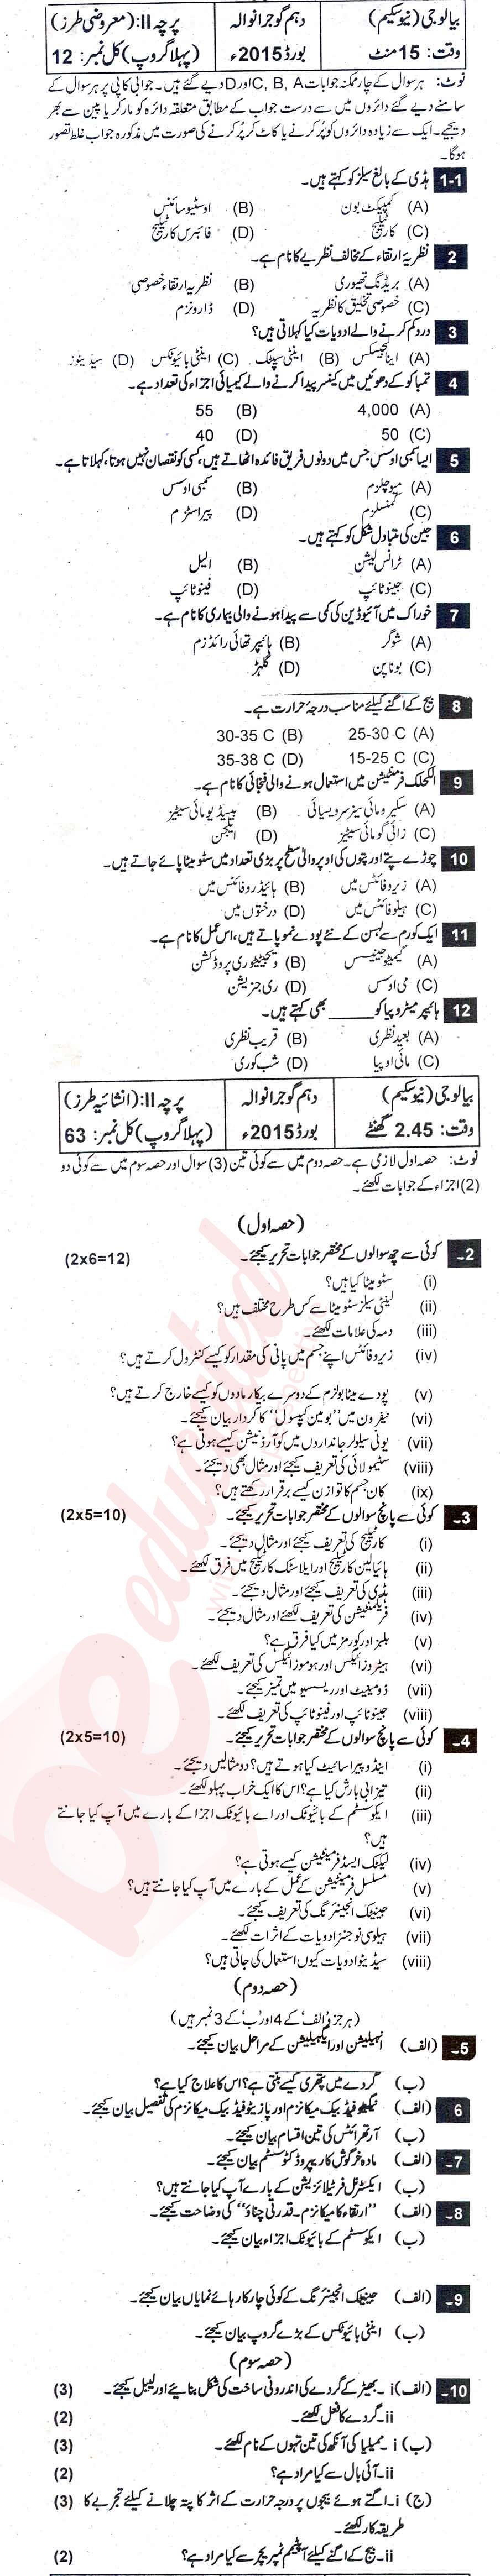 Biology 10th Urdu Medium Past Paper Group 1 BISE Gujranwala 2015